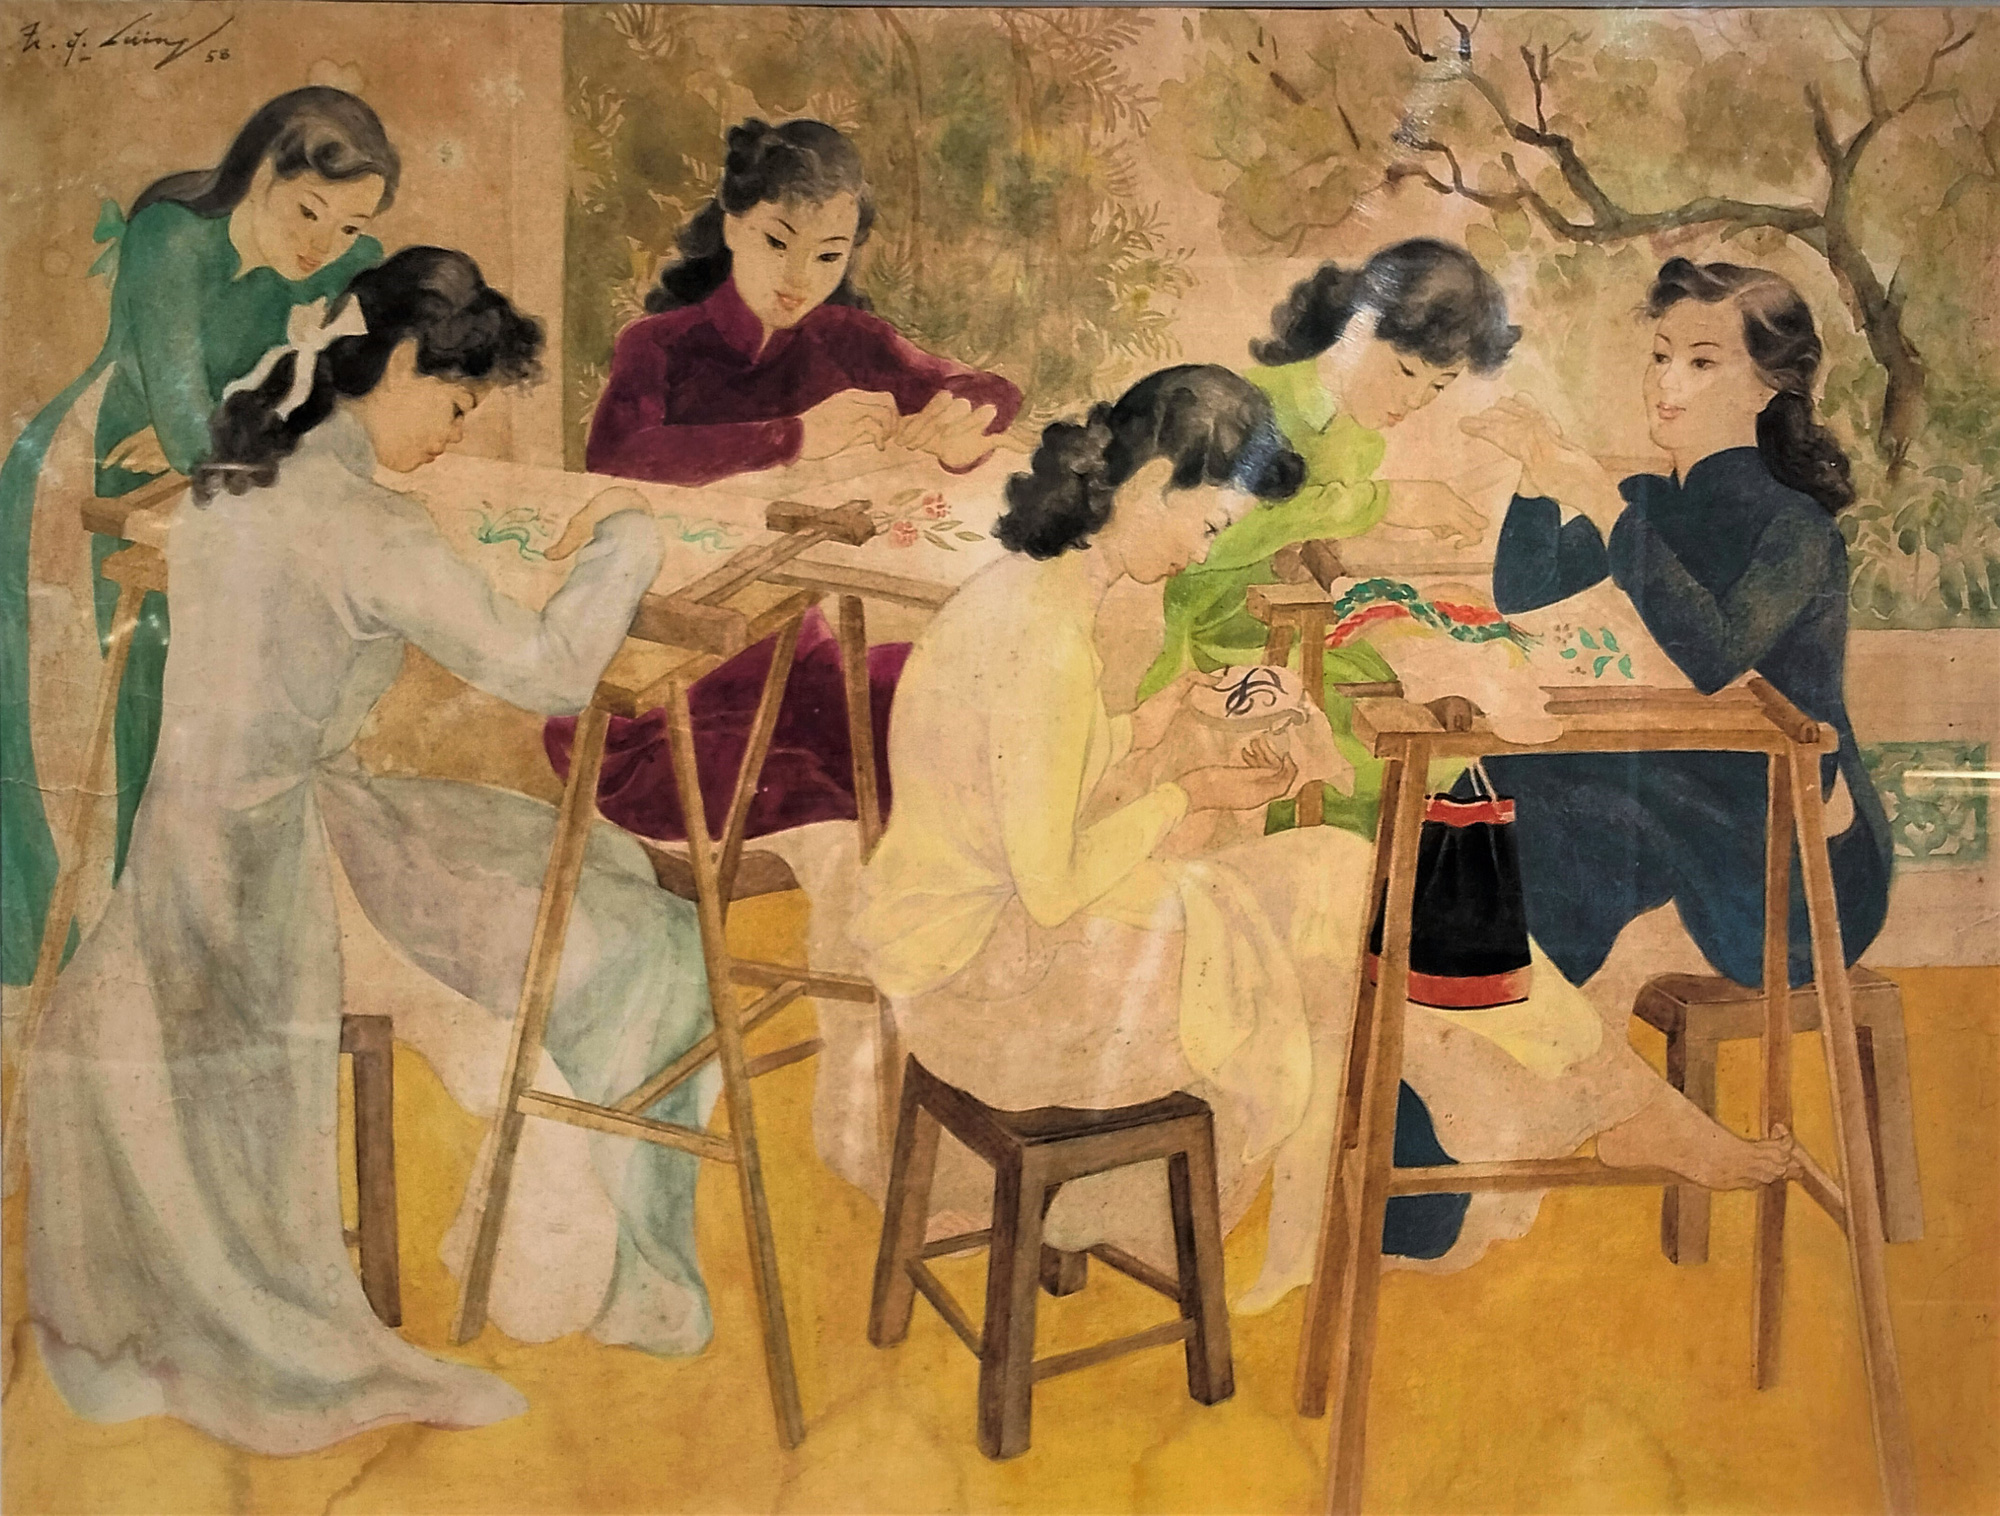 Tranh màu nước "Lớp học thêu" vẽ năm 1958 của họa sĩ Trần Đông Lương (1925 - 1993).